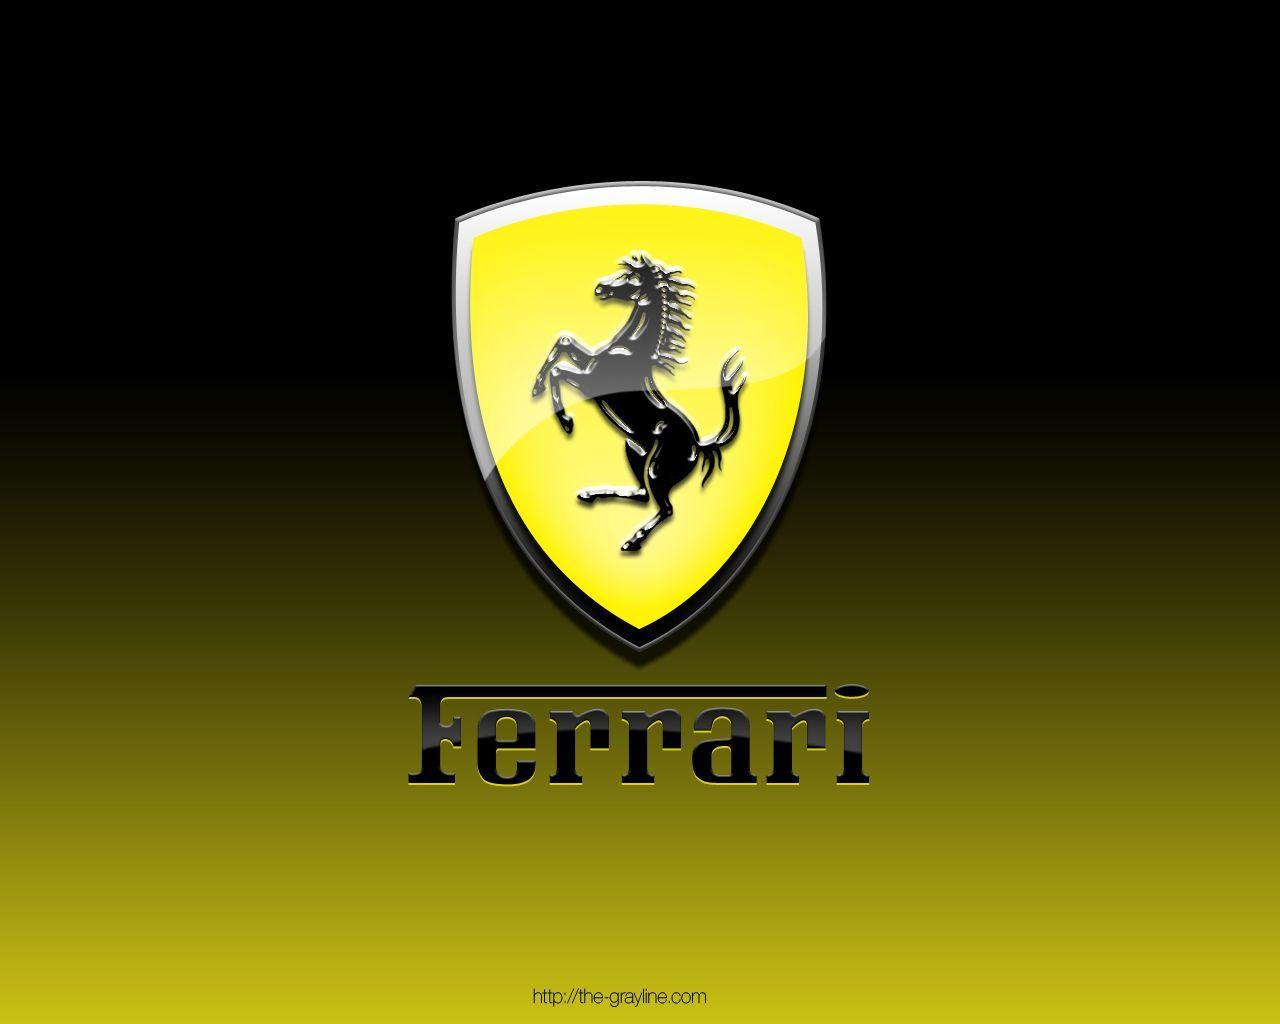 Ferrari Logo Wallpaper For Android Ferrari Logo Live Wallpaper